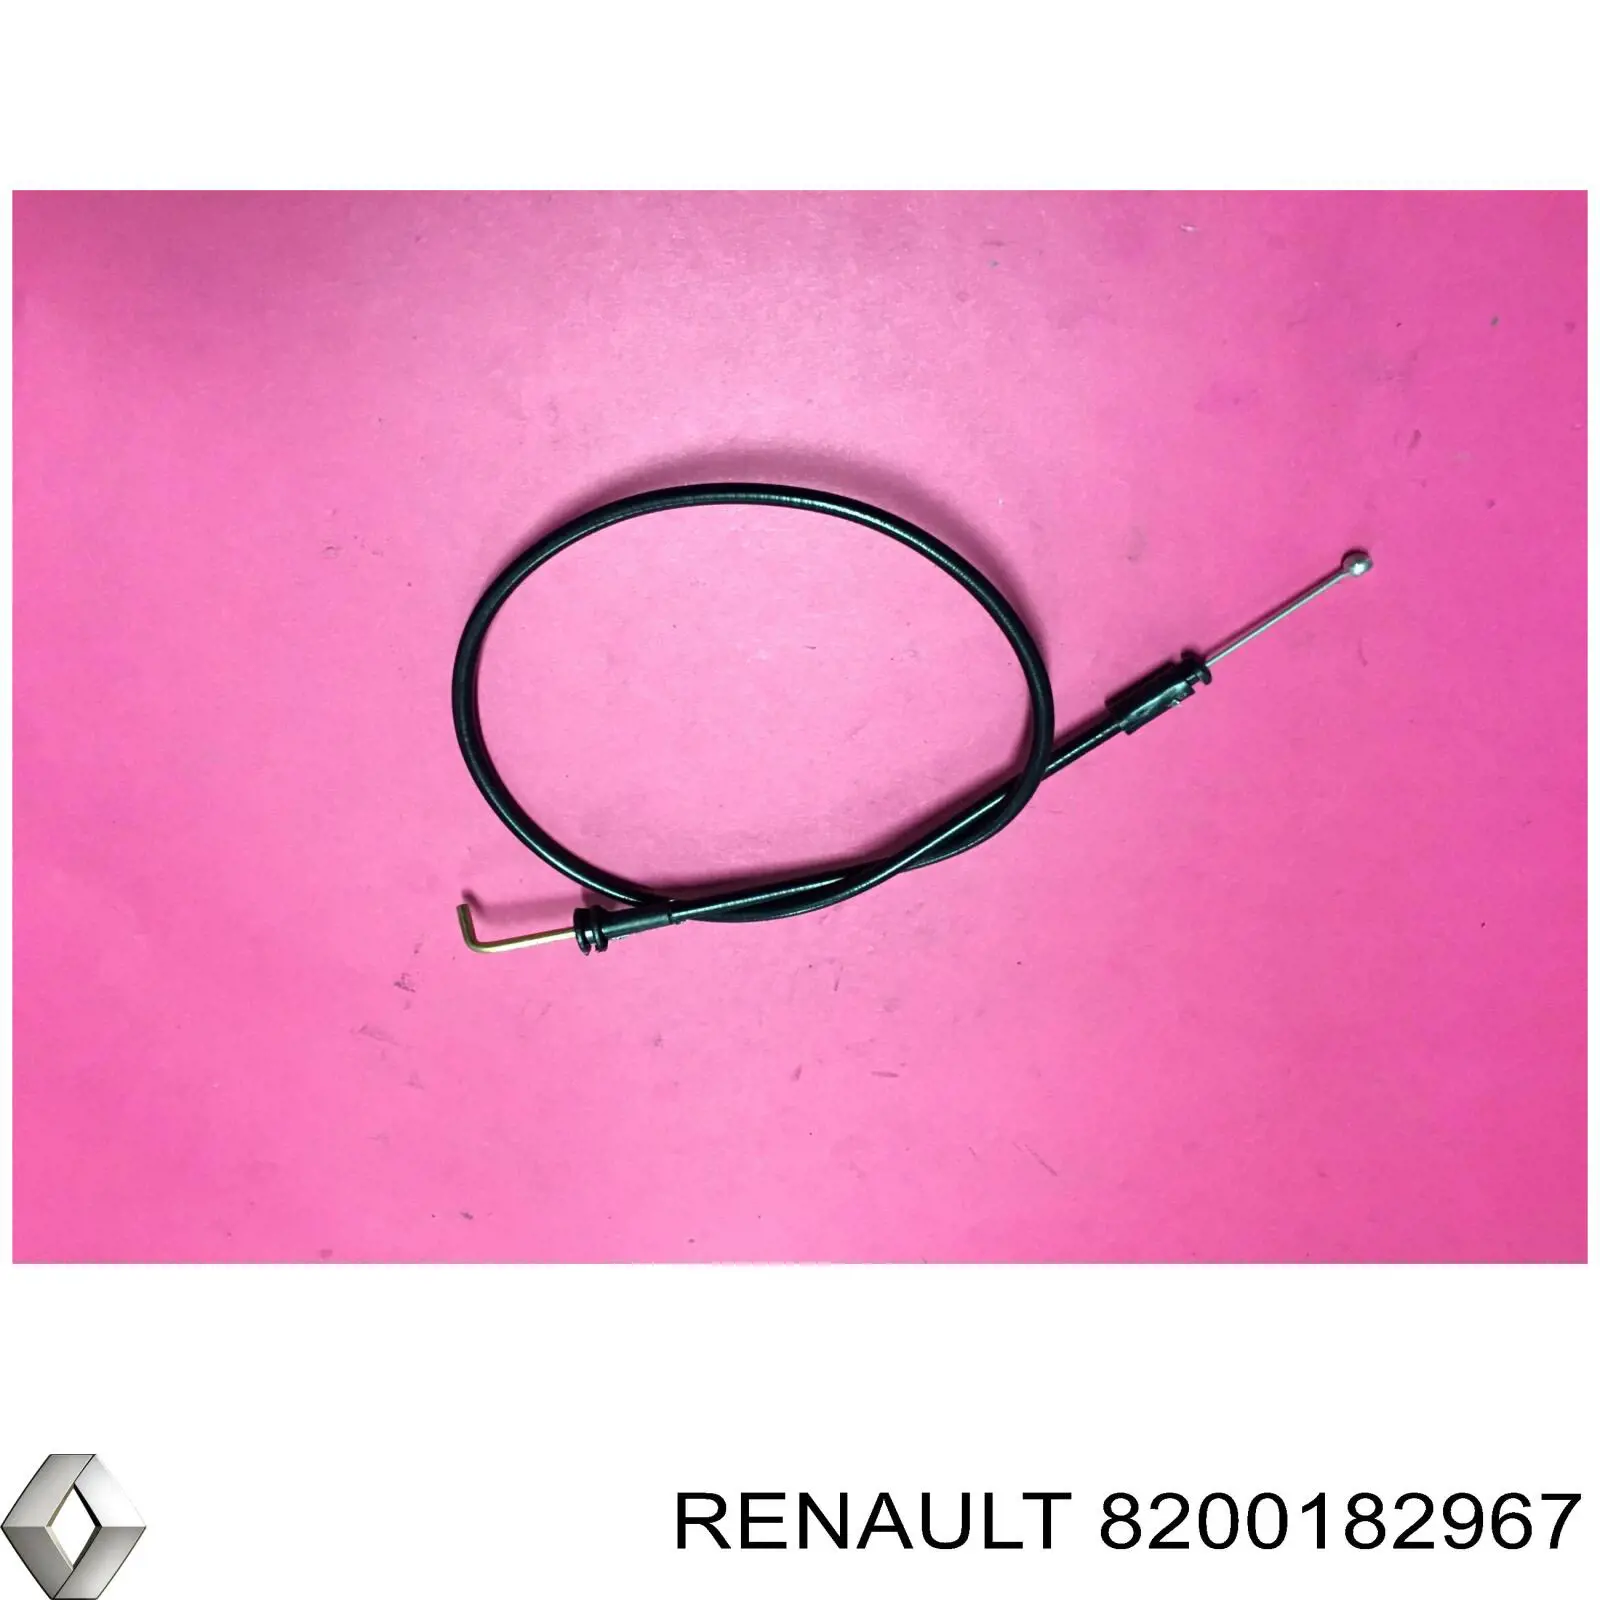 8200182967 Renault (RVI) cable de accionamiento, desbloqueo de puerta corrediza